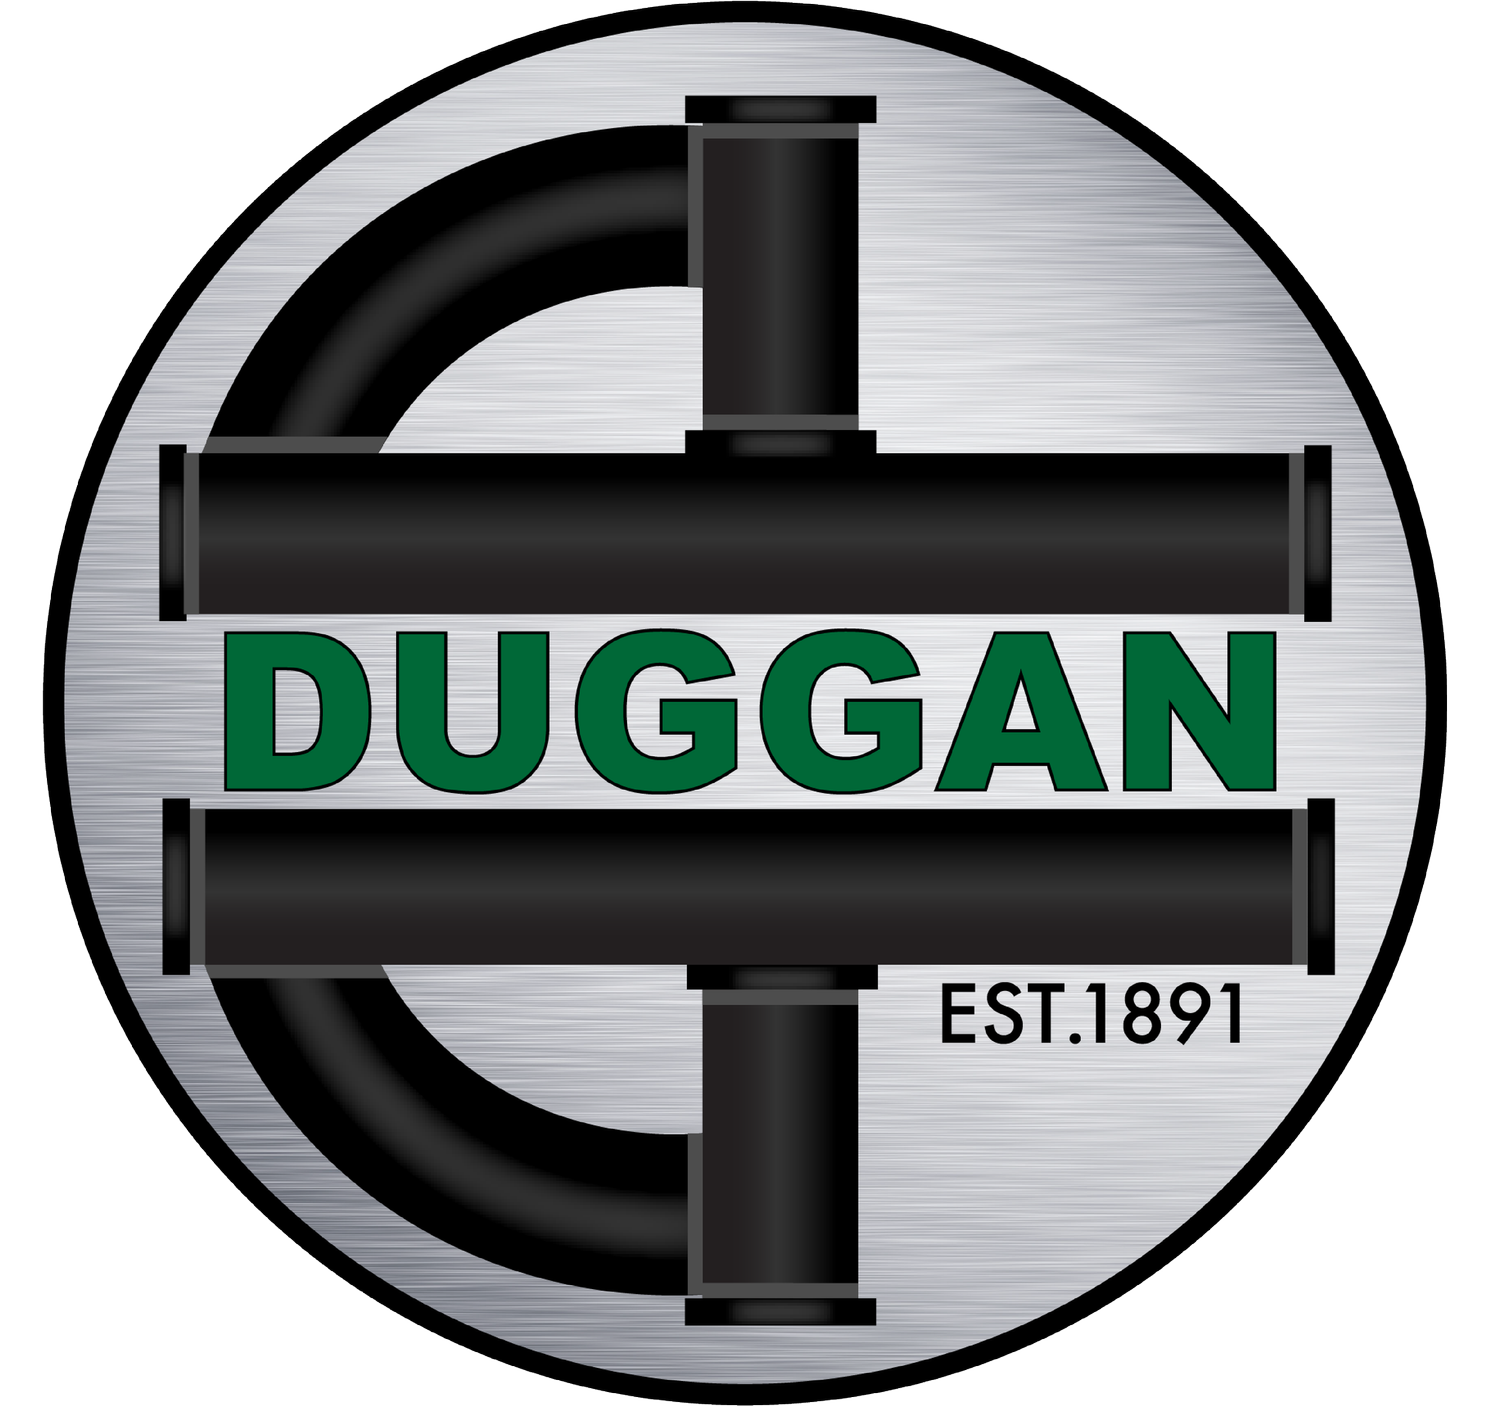 E.M. Duggan